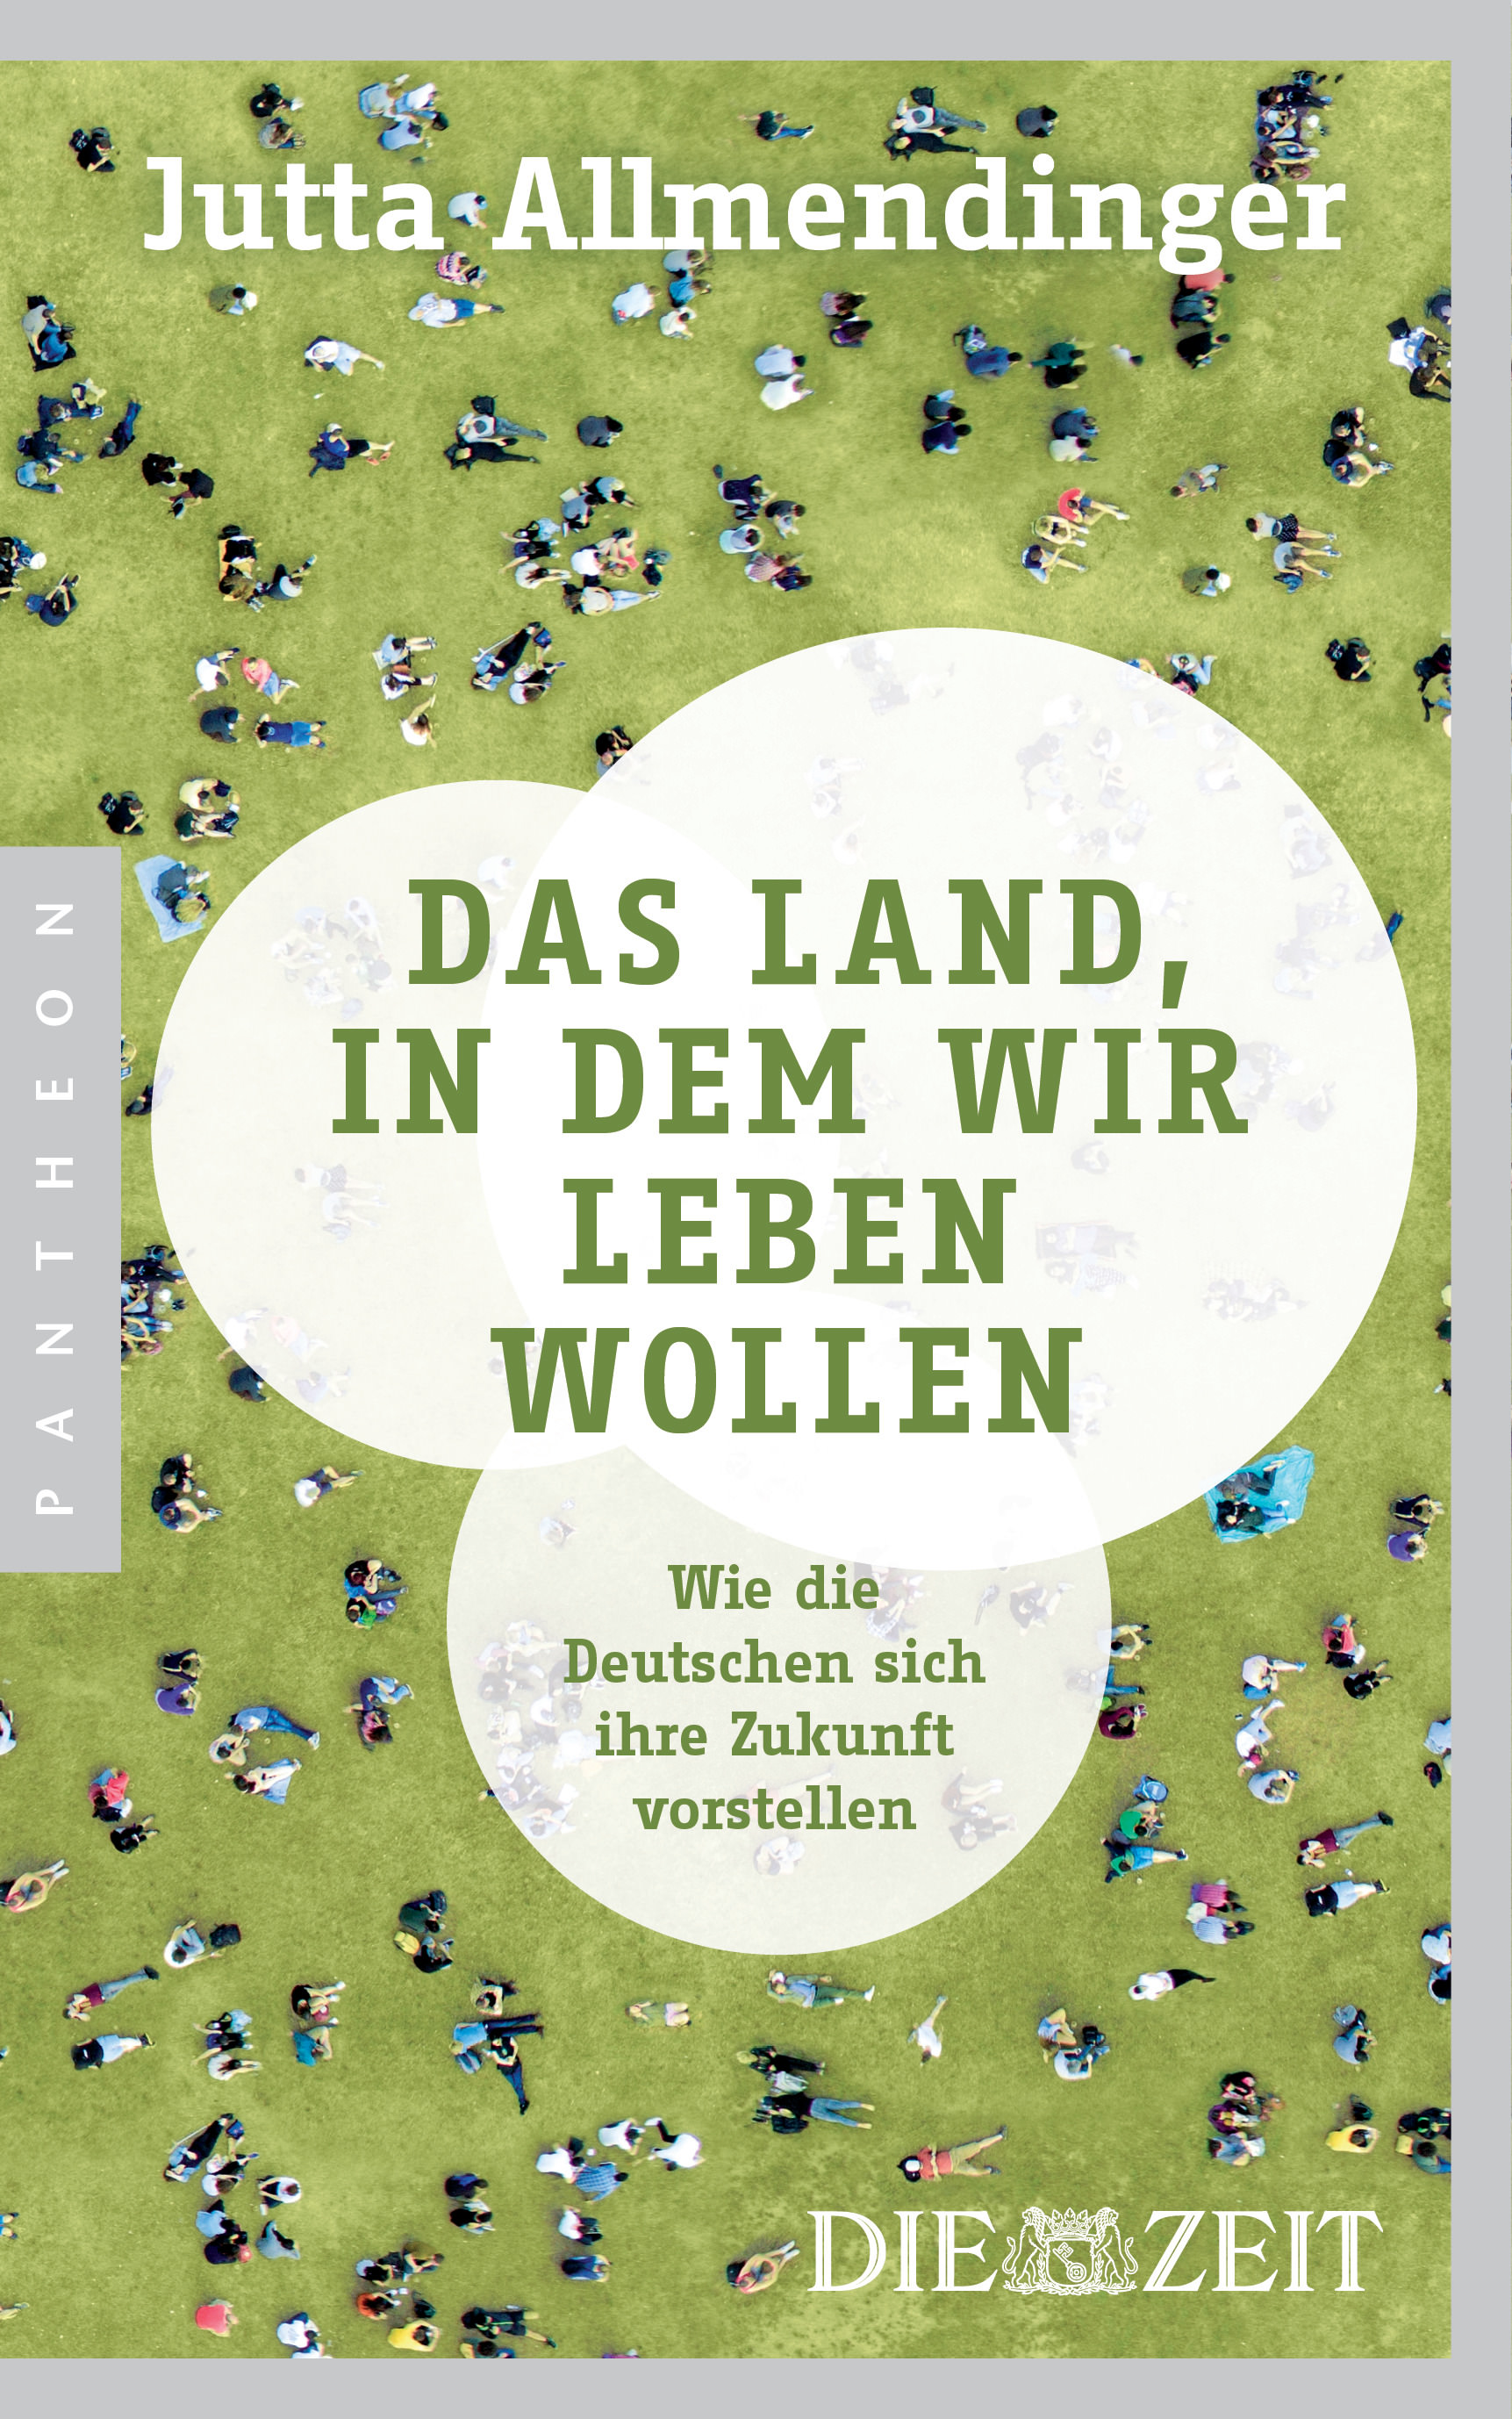 Buchcover: Jutta Allmendinger: Das Land, in dem wir leben wollen. Panthaon Verlag